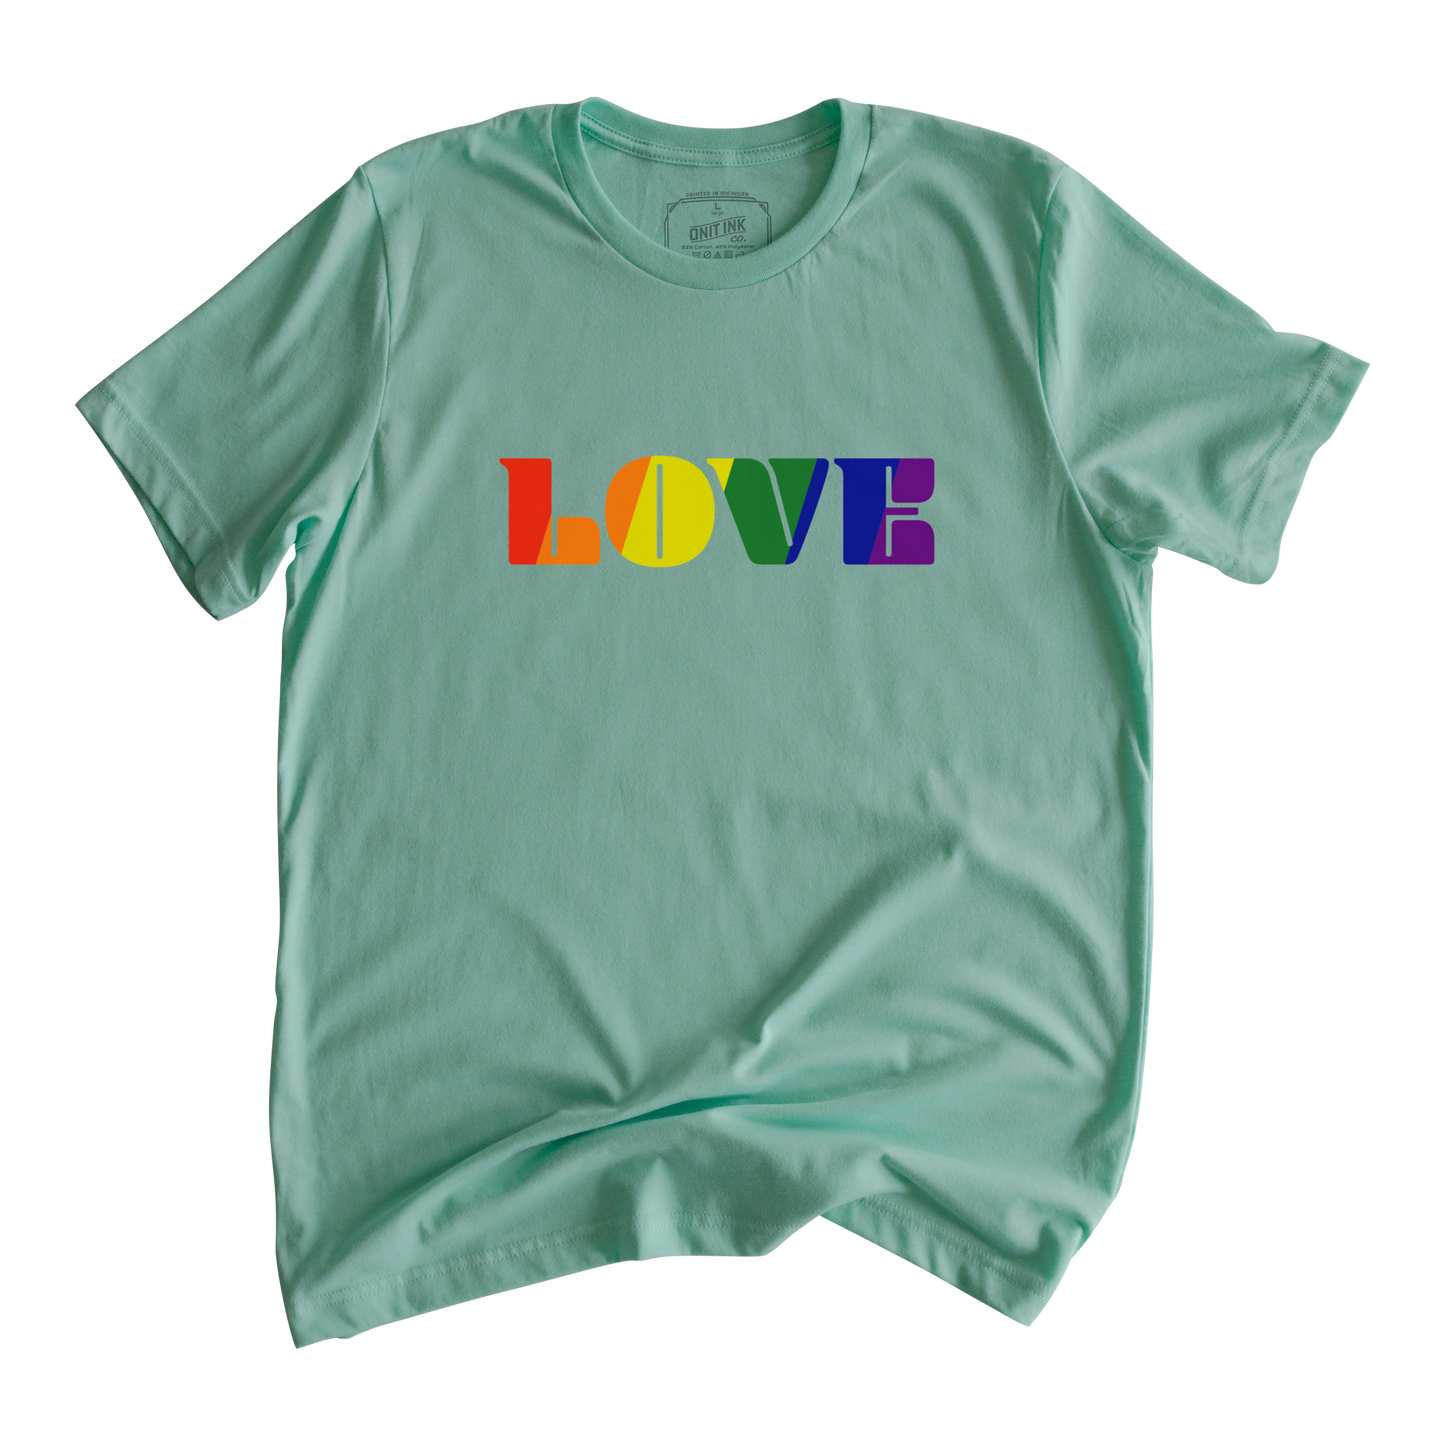 A Lot of LOVE T-Shirt